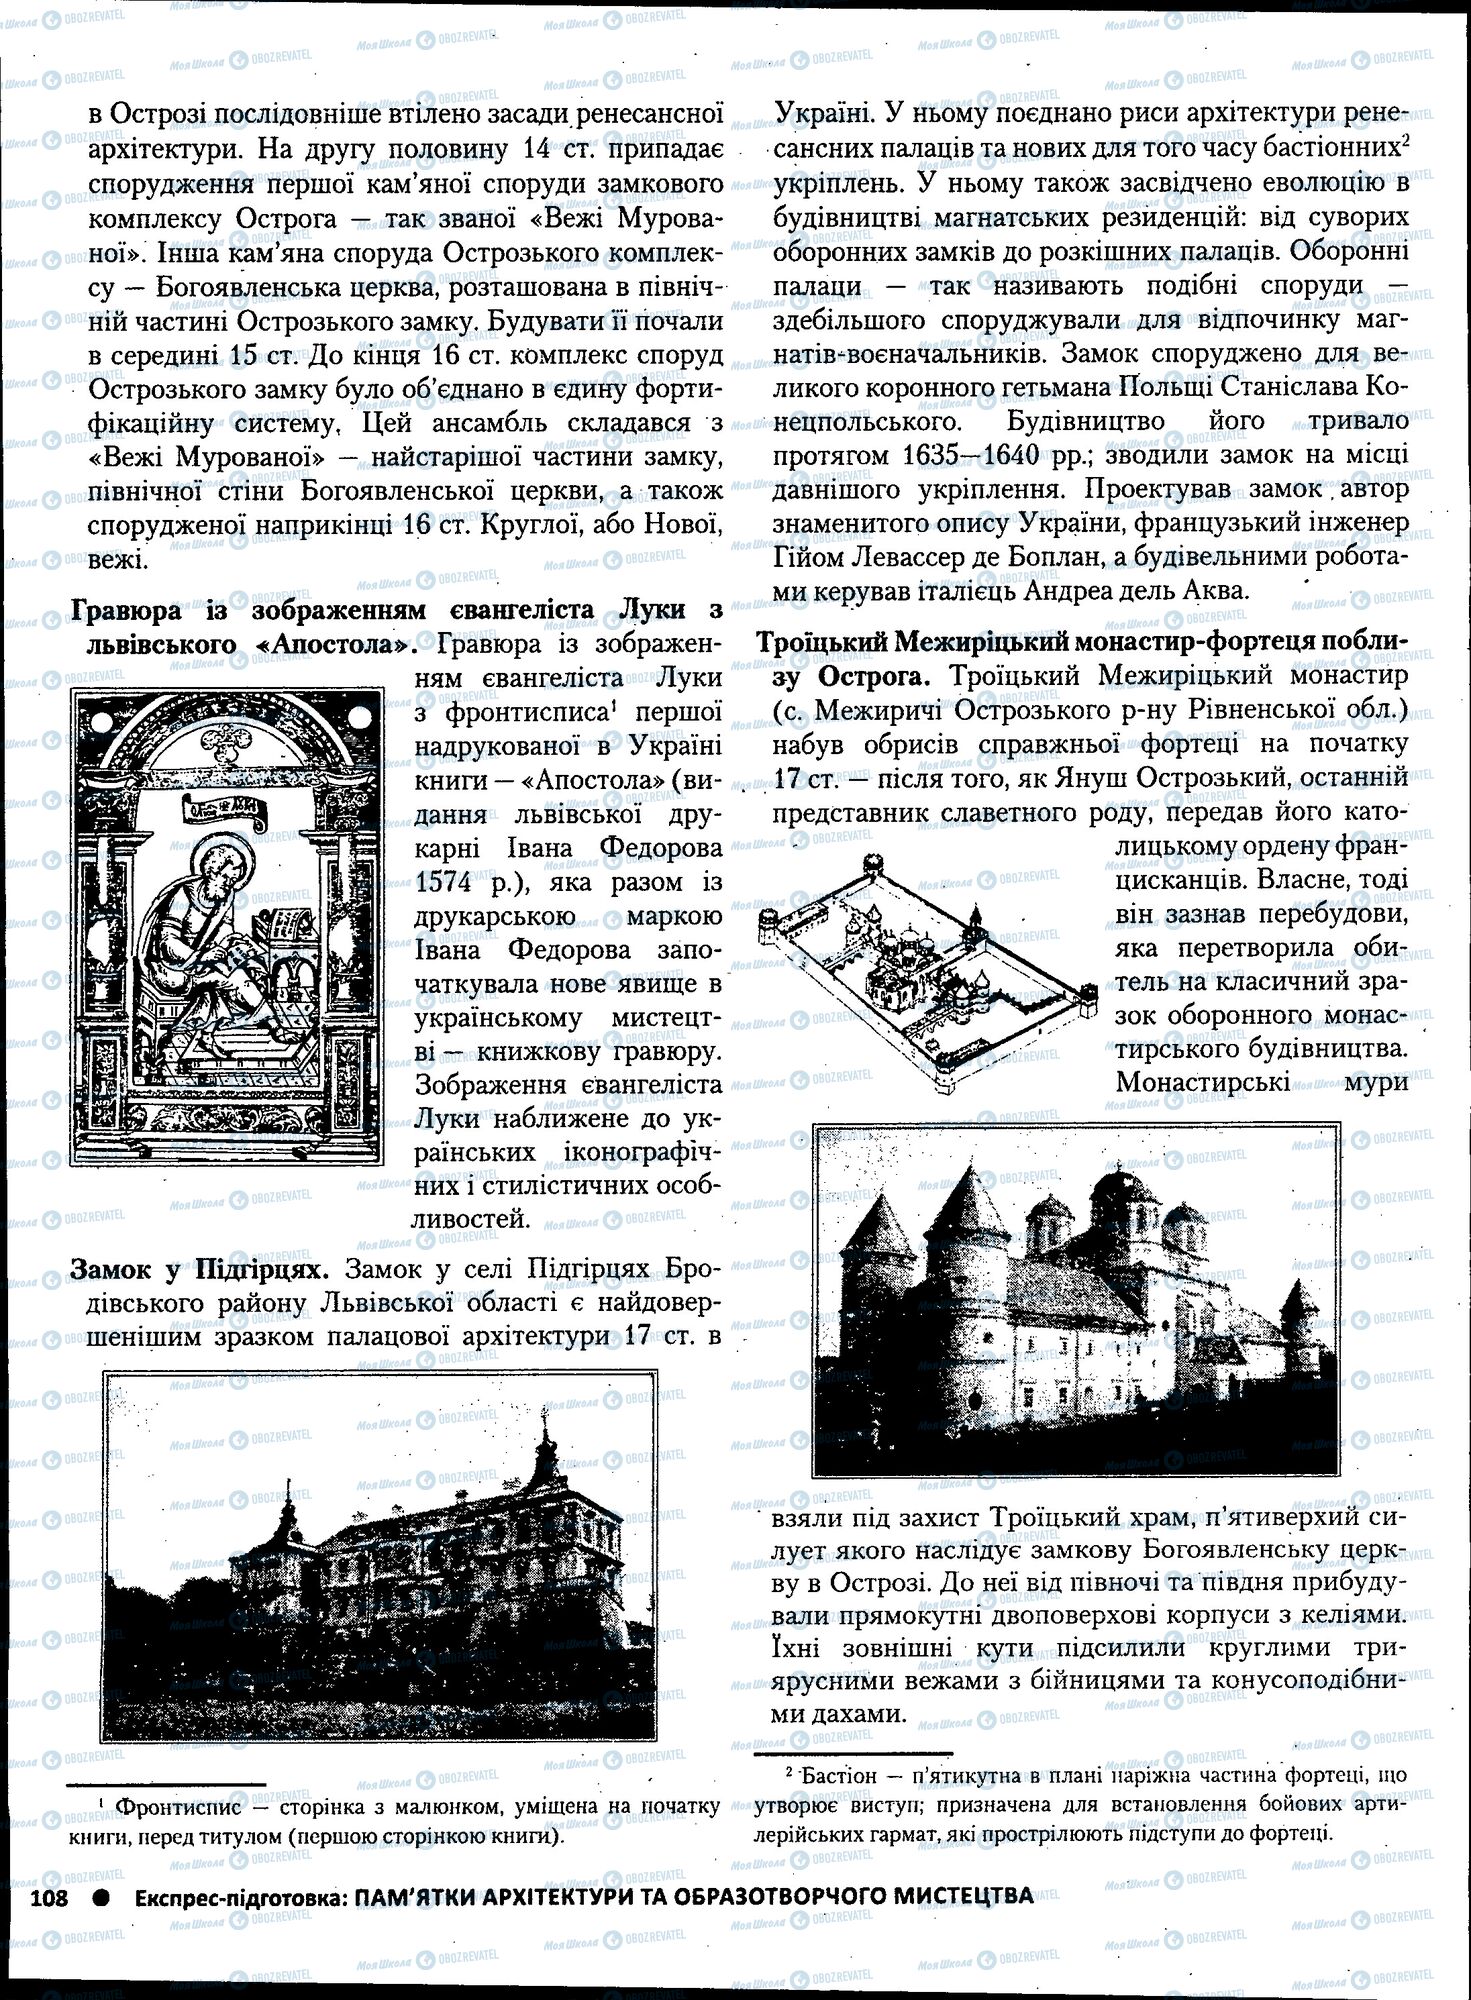 ЗНО История Украины 11 класс страница 108